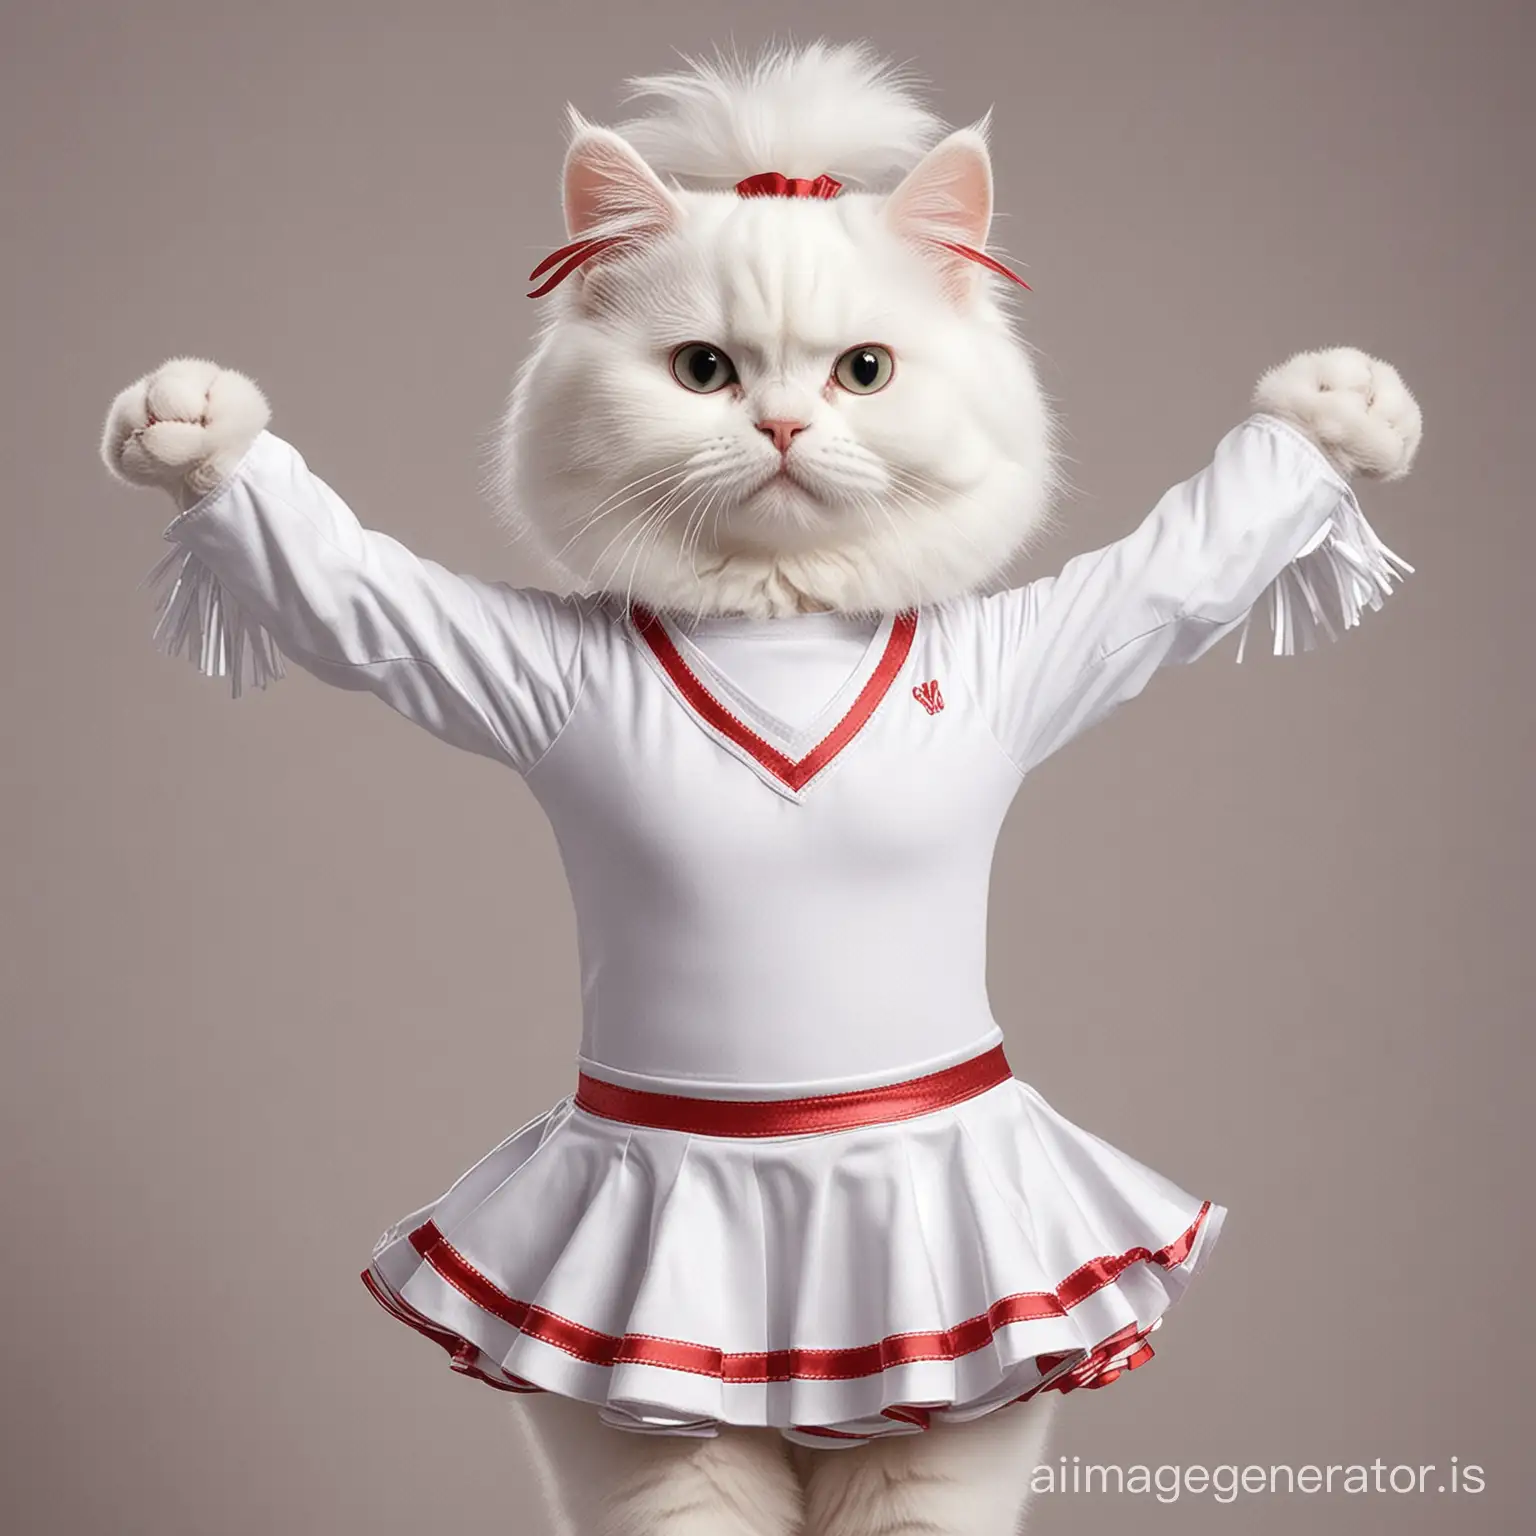 cute white cat cheerleader